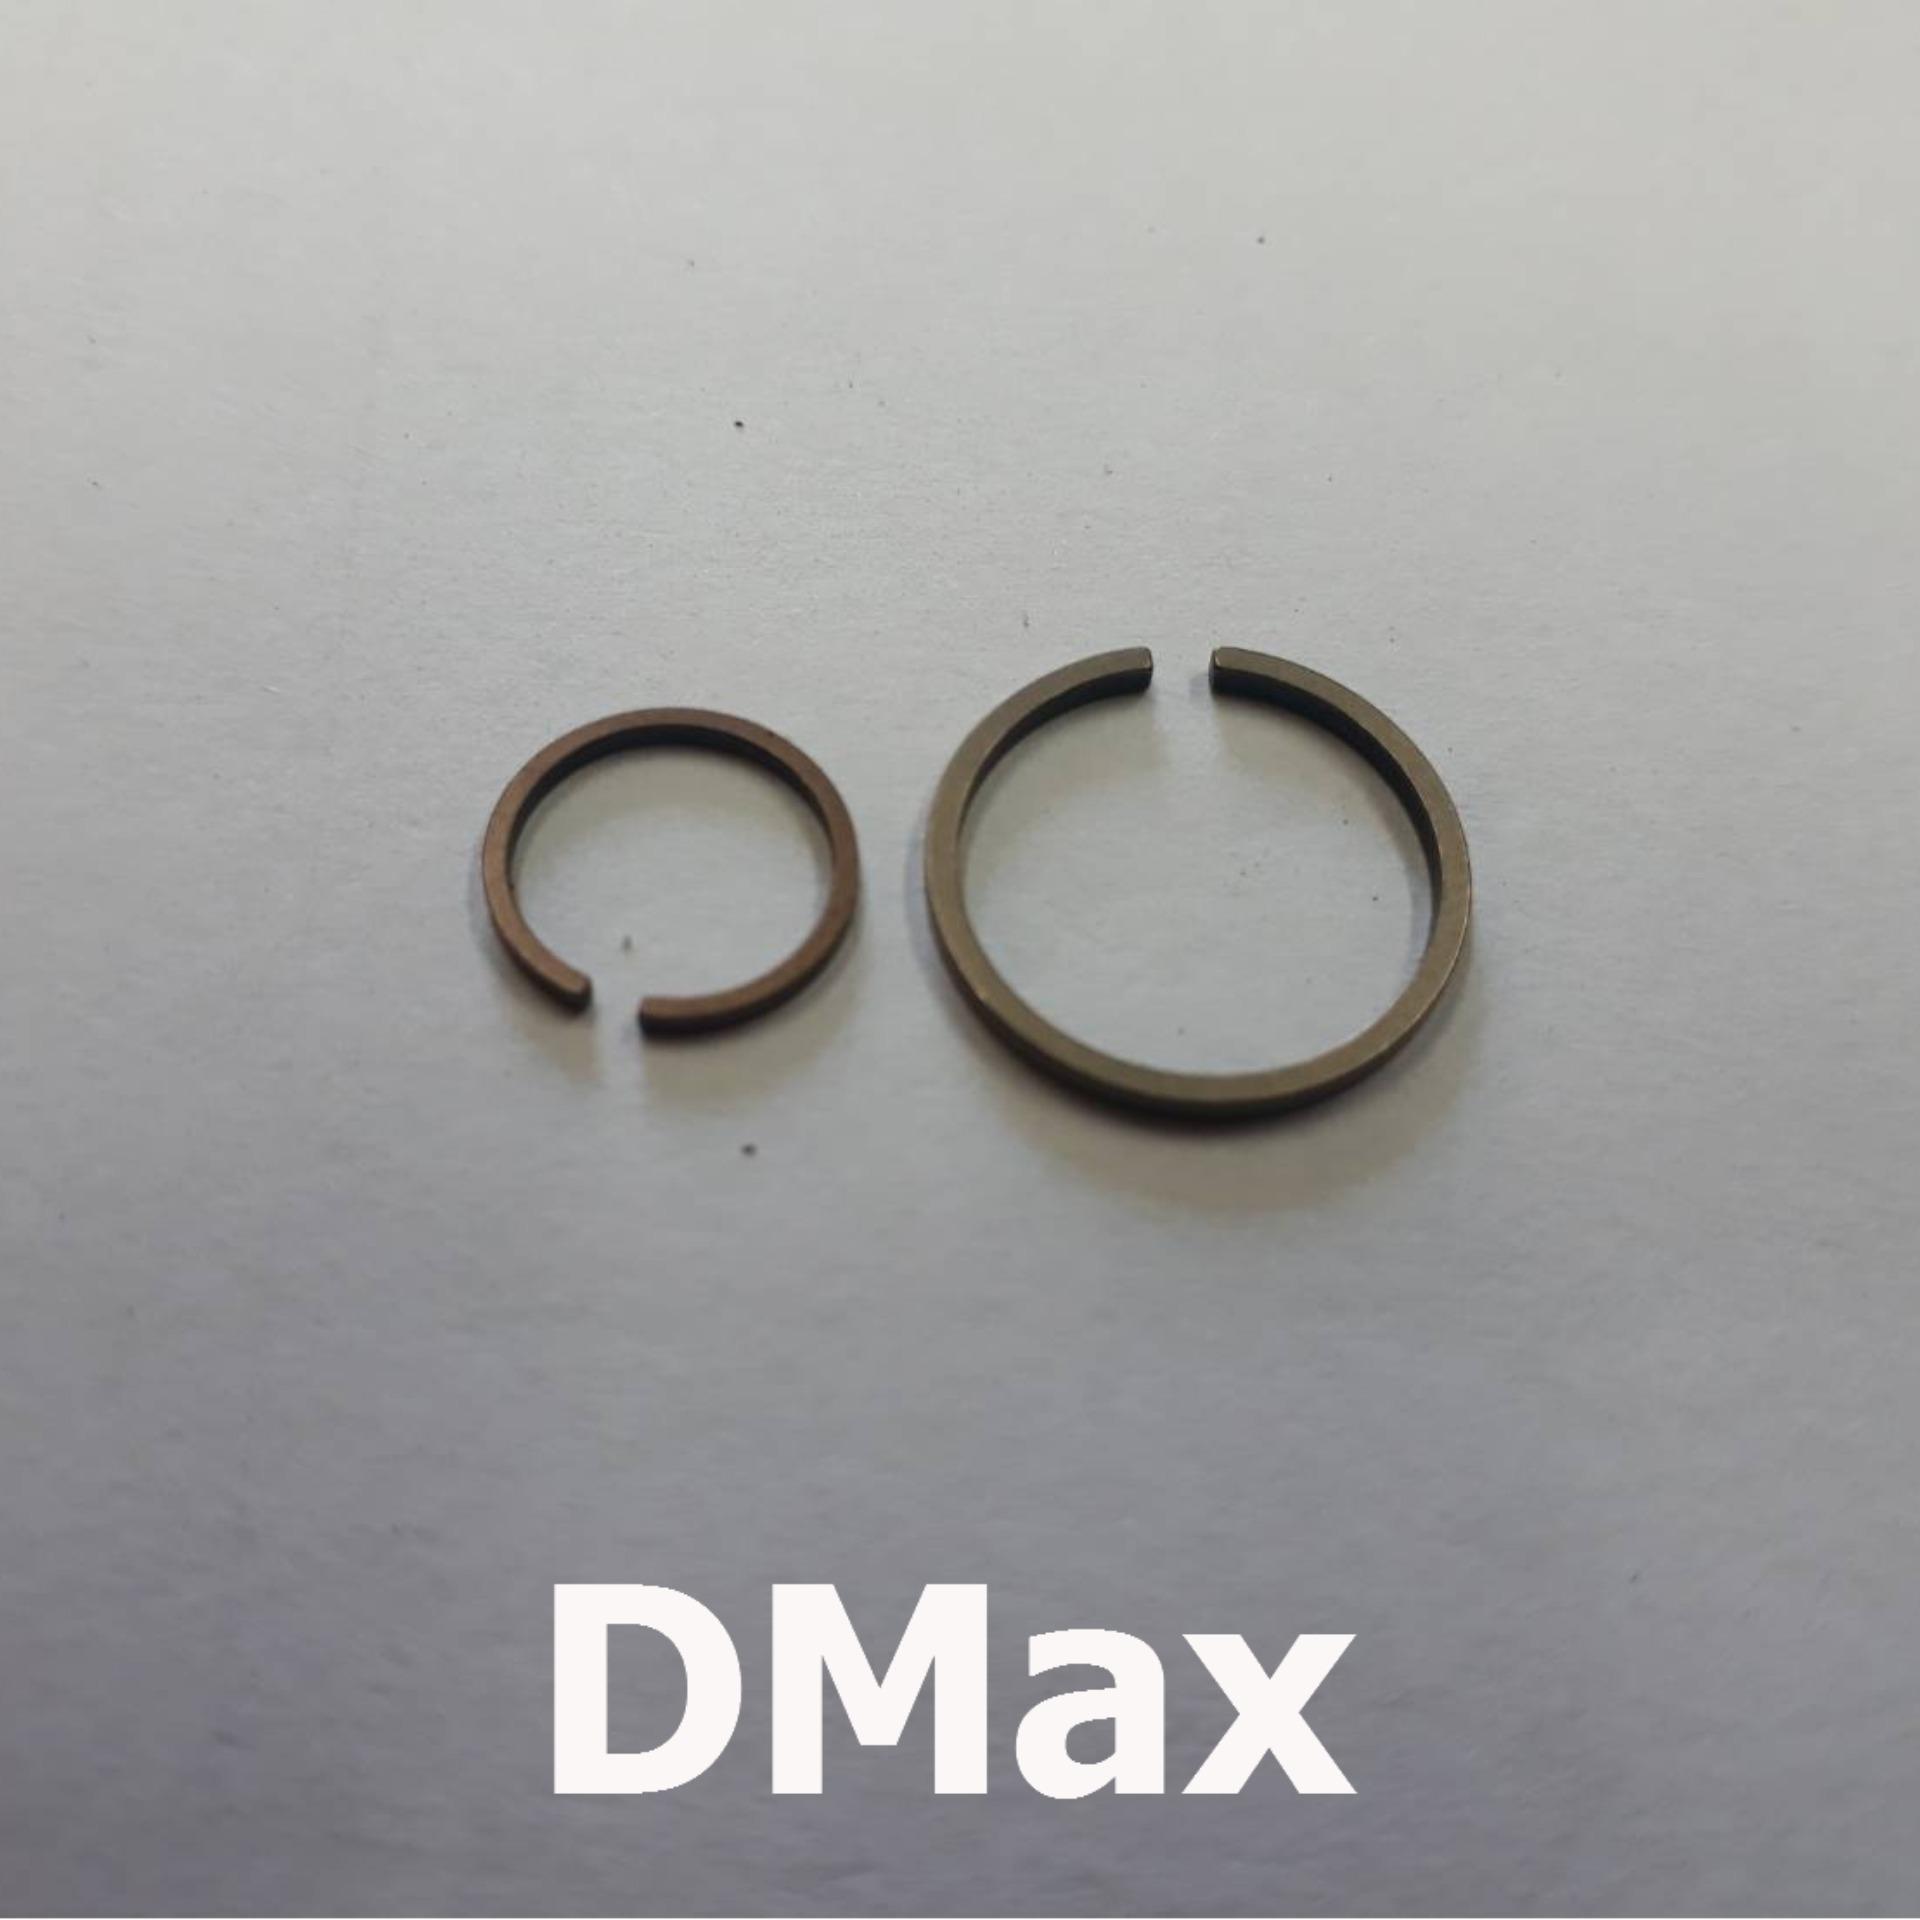 แหวนหน้า และแหวนหลัง สำหรับซ่อมเทอร์โบ ของดีแม็ค3.0 (แก้ปัญหาน้ำมันไหล รั่วหน้าและหลัง) แหวนเทอร์โบ